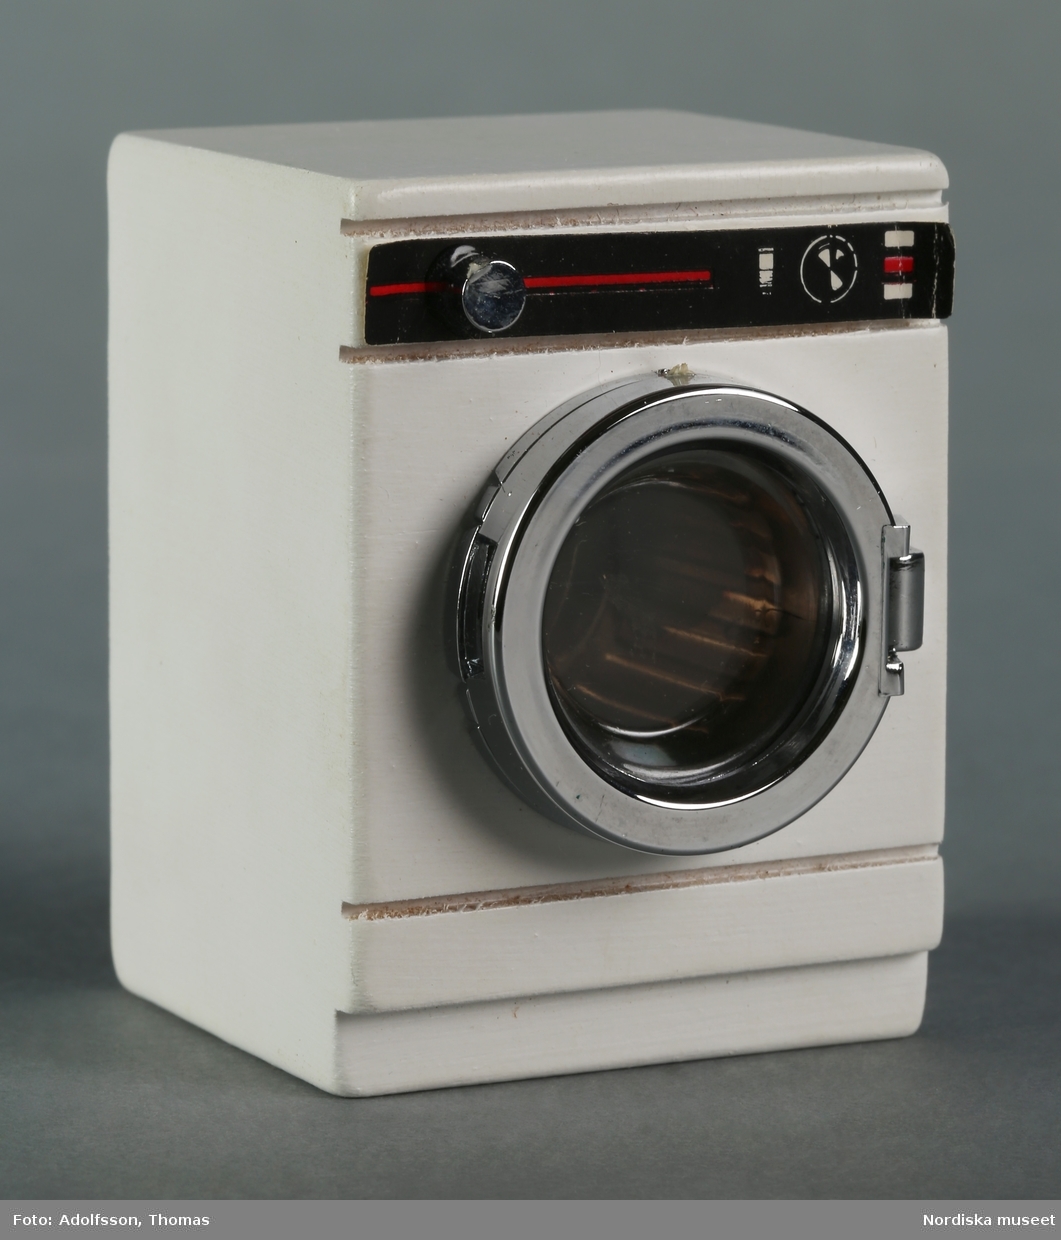 Tvättmaskin av vitmålat trä med tvättrumma av metallfärgad plast samt pappersdekor.som hör till dockskåpsinredningen i källarens tvättstuga i dockskåp NM.0331721+. Till vänster om tvättmaskinen står en tvättlåda (NM.0333456) för förvaring av tvätt och ovanpå maskinen en gul tvättbalja av plast (NM.0333461).